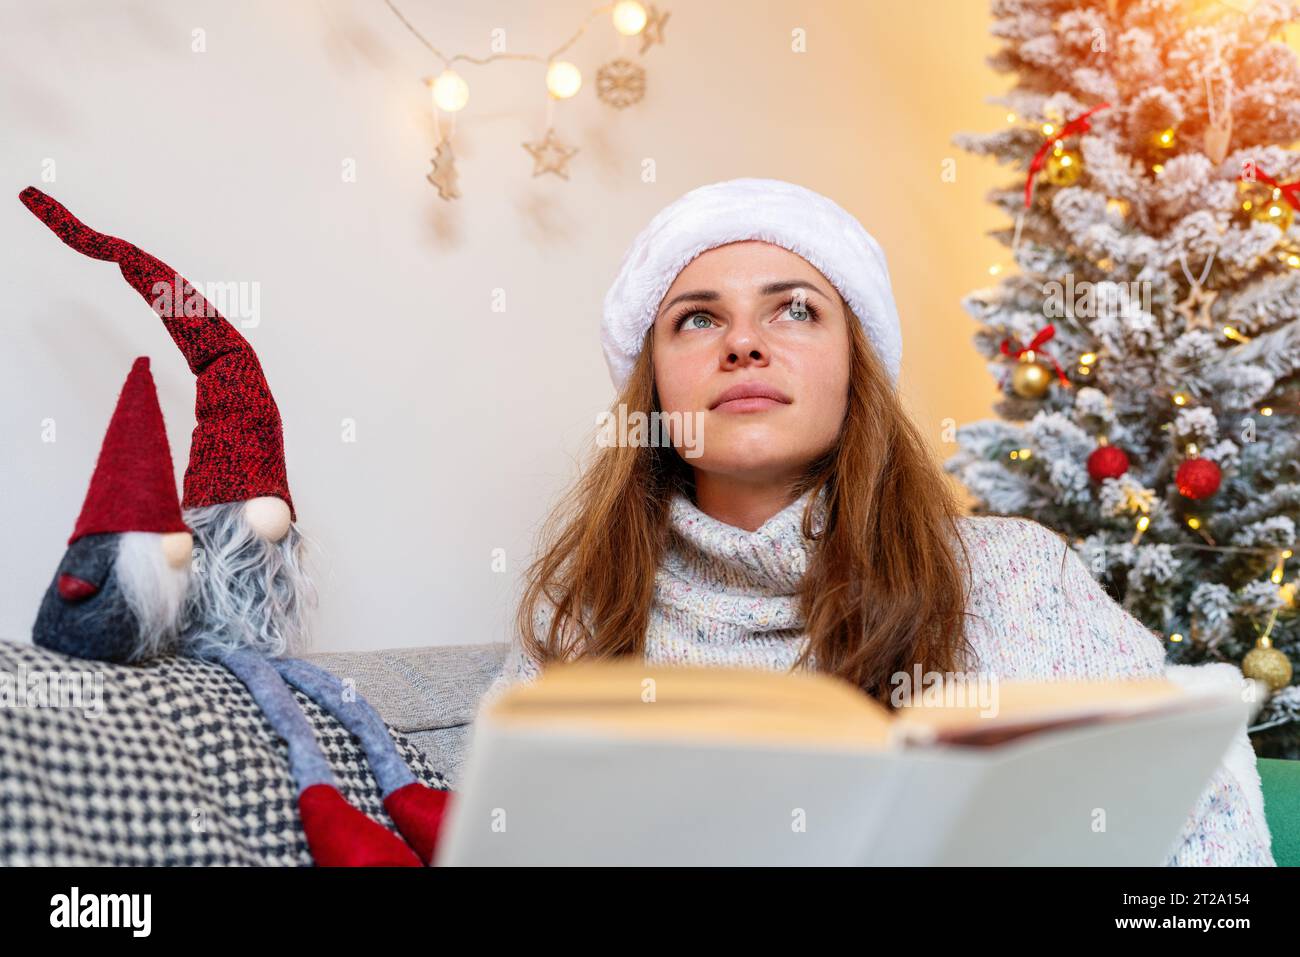 Kindheit und Kindheitsträume. Erwachsene Frau träumt und stellt sich vor, während sie Weihnachtsmärchen liest. Stockfoto